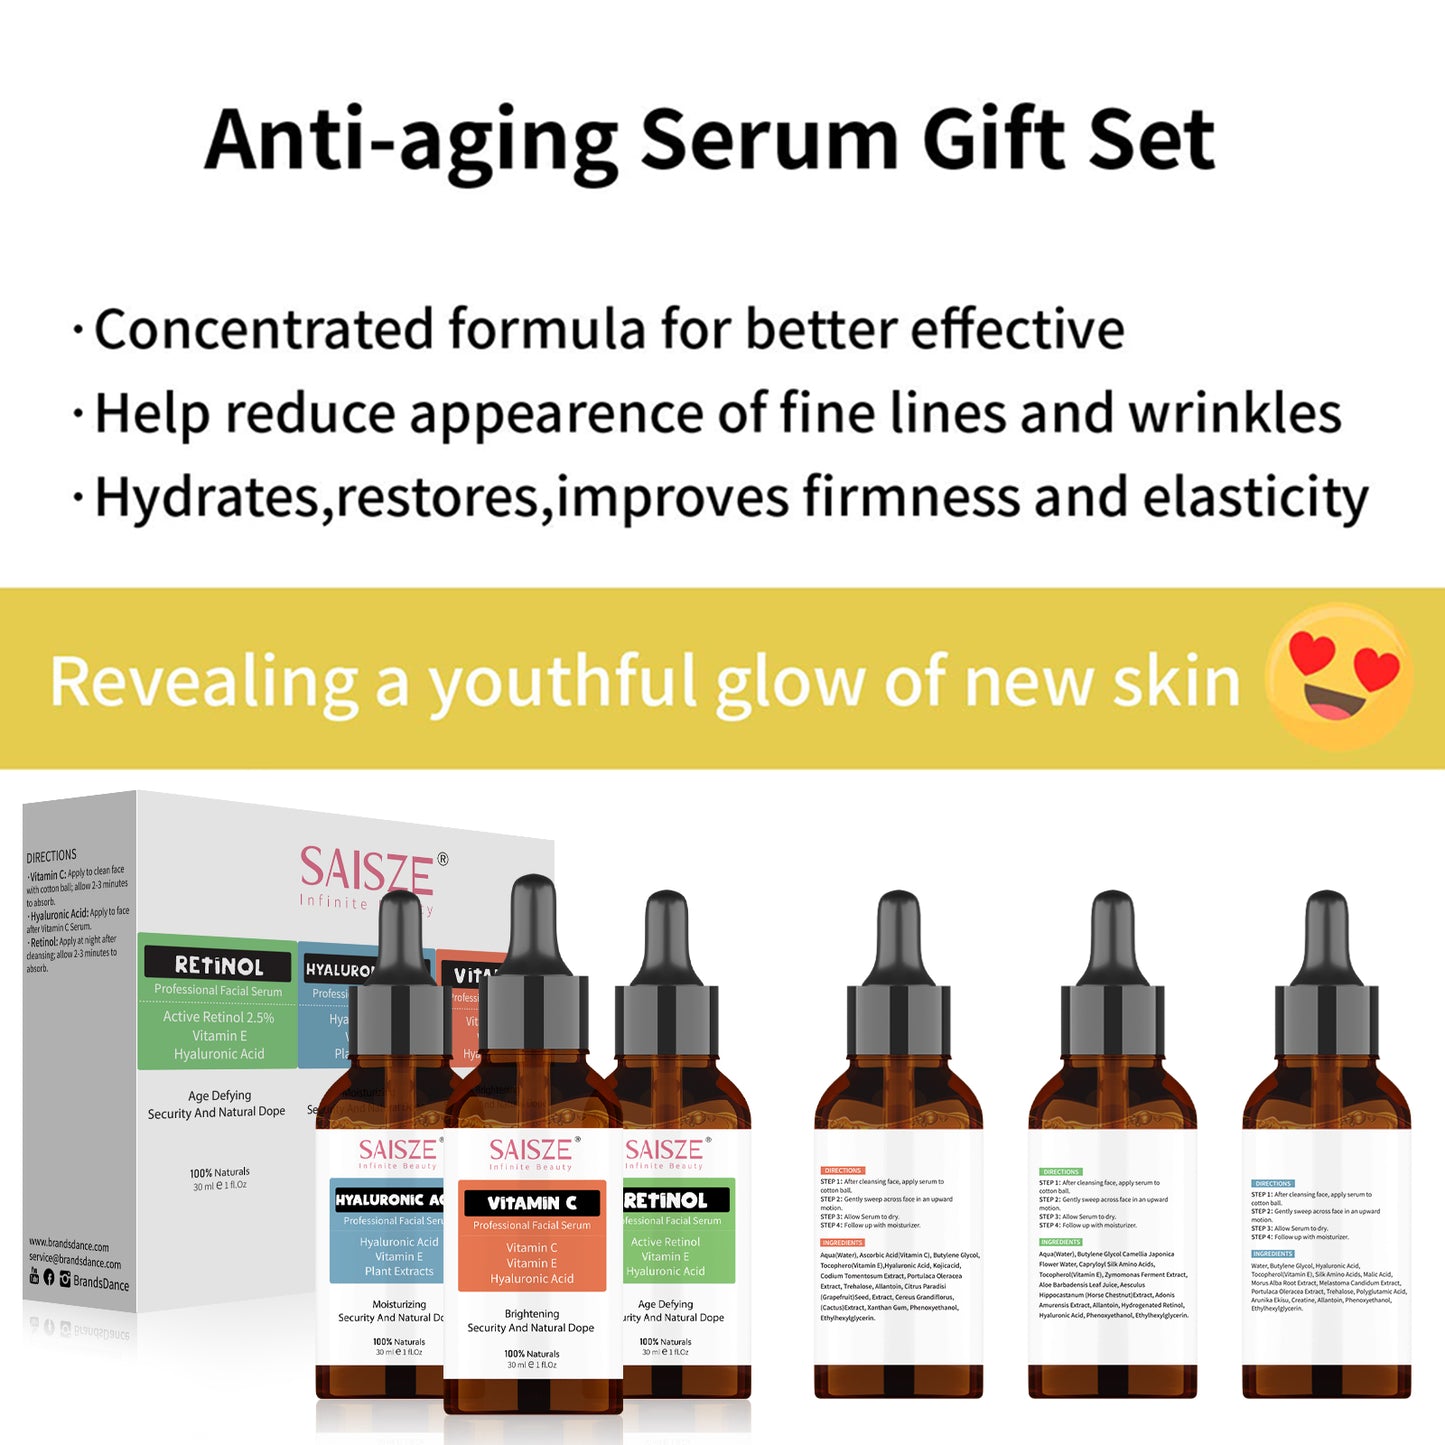 Saisze Anti Aging Serum Kit Face Serum Facial Serum, Retinol Serum & Vitamin C Serum & Hyaluronic Acid Serum, for Firming, Hydrating for Face Day & Night, Facial Serum Gift Set